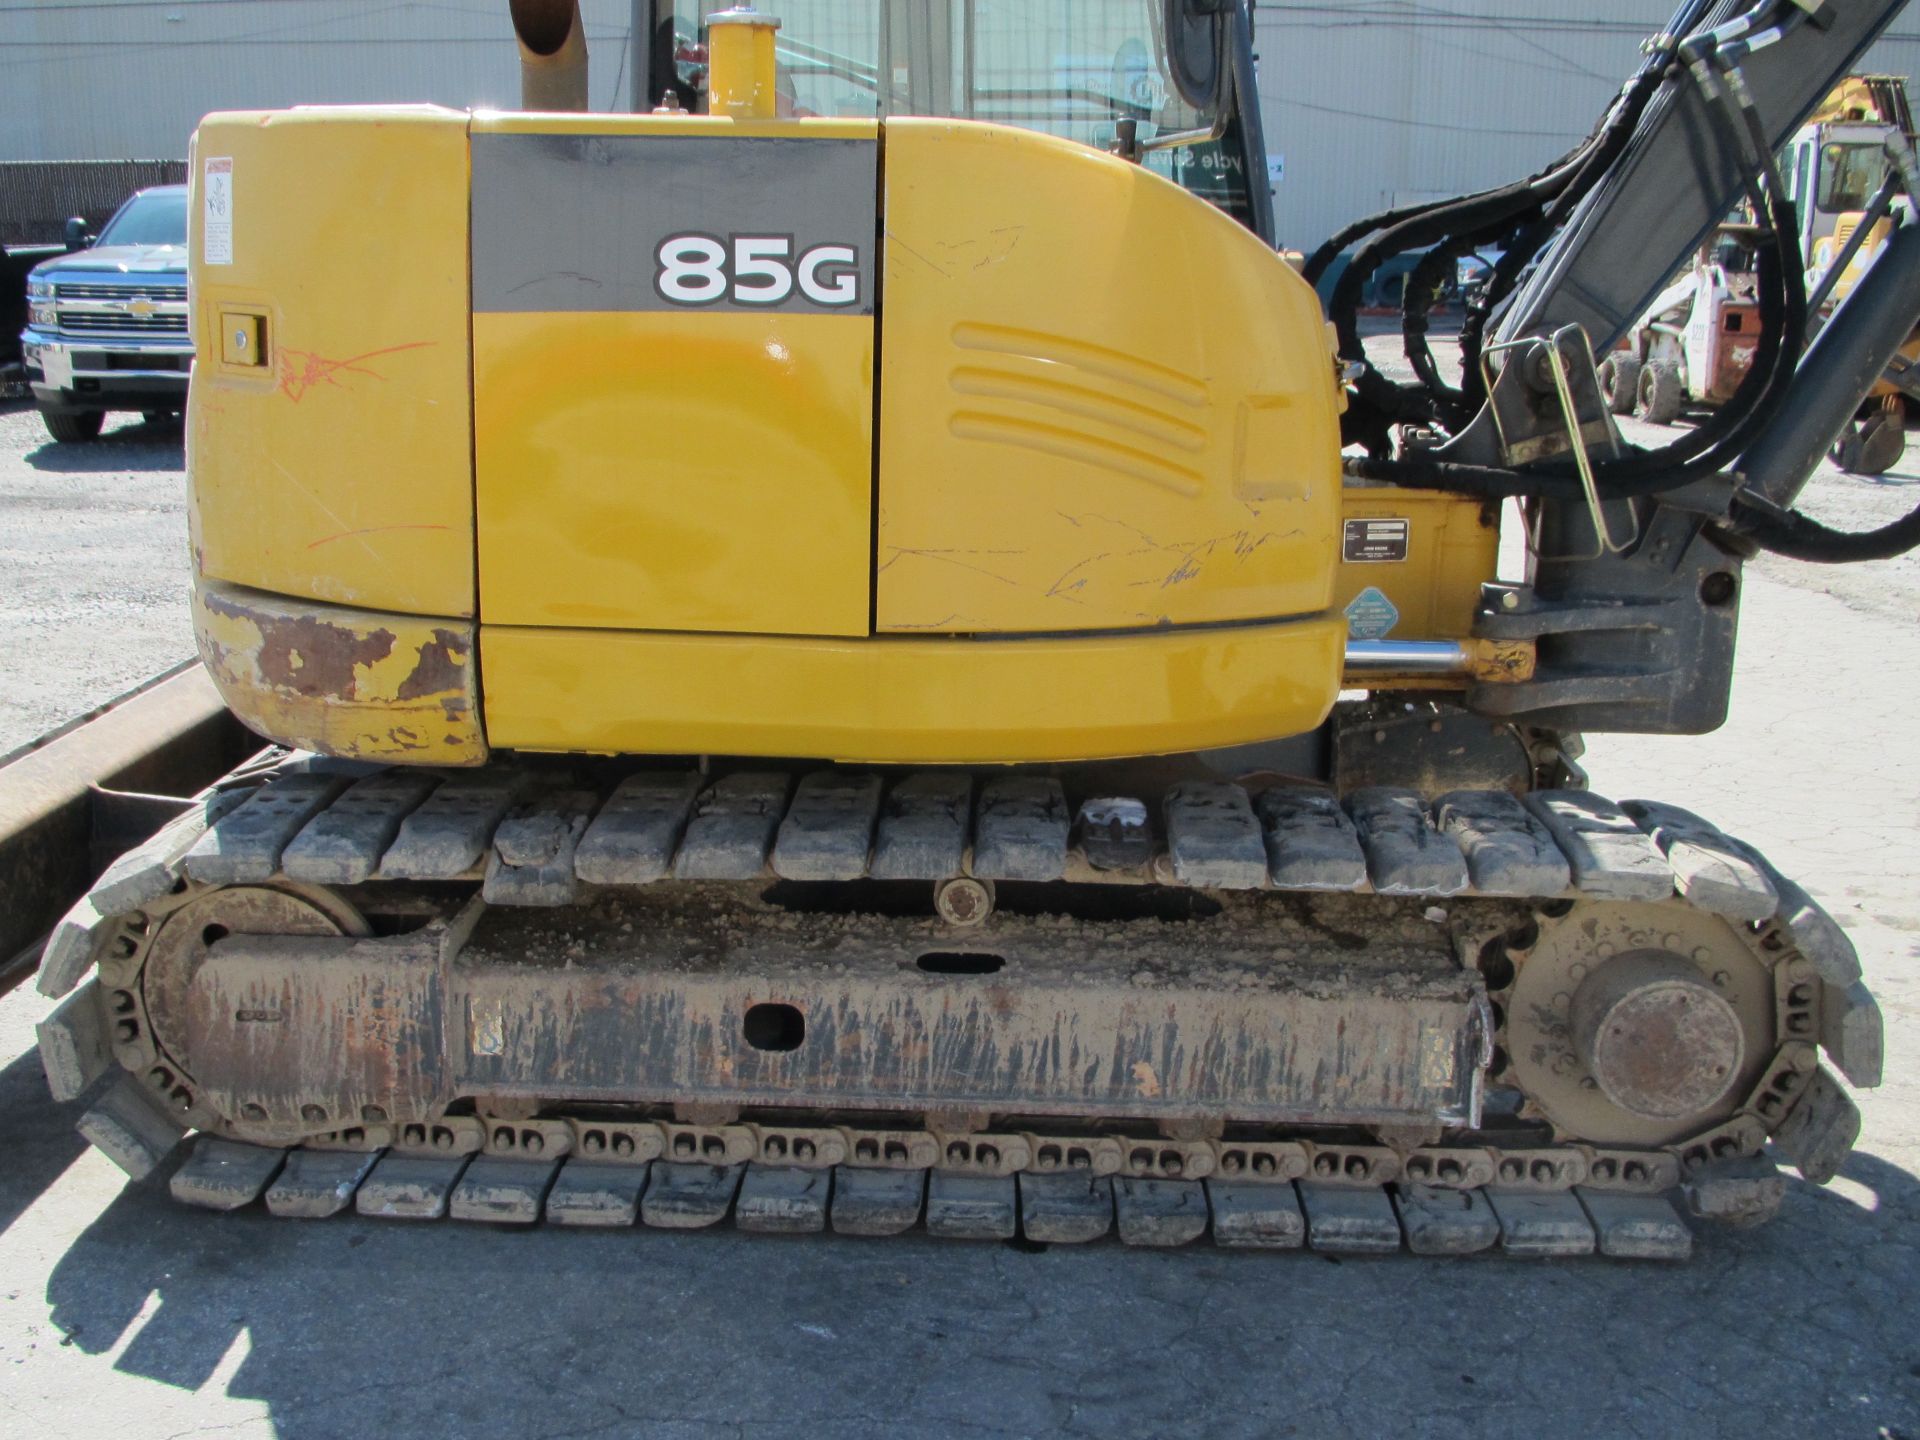 2014 John Deere 85G Excavator - Image 14 of 25